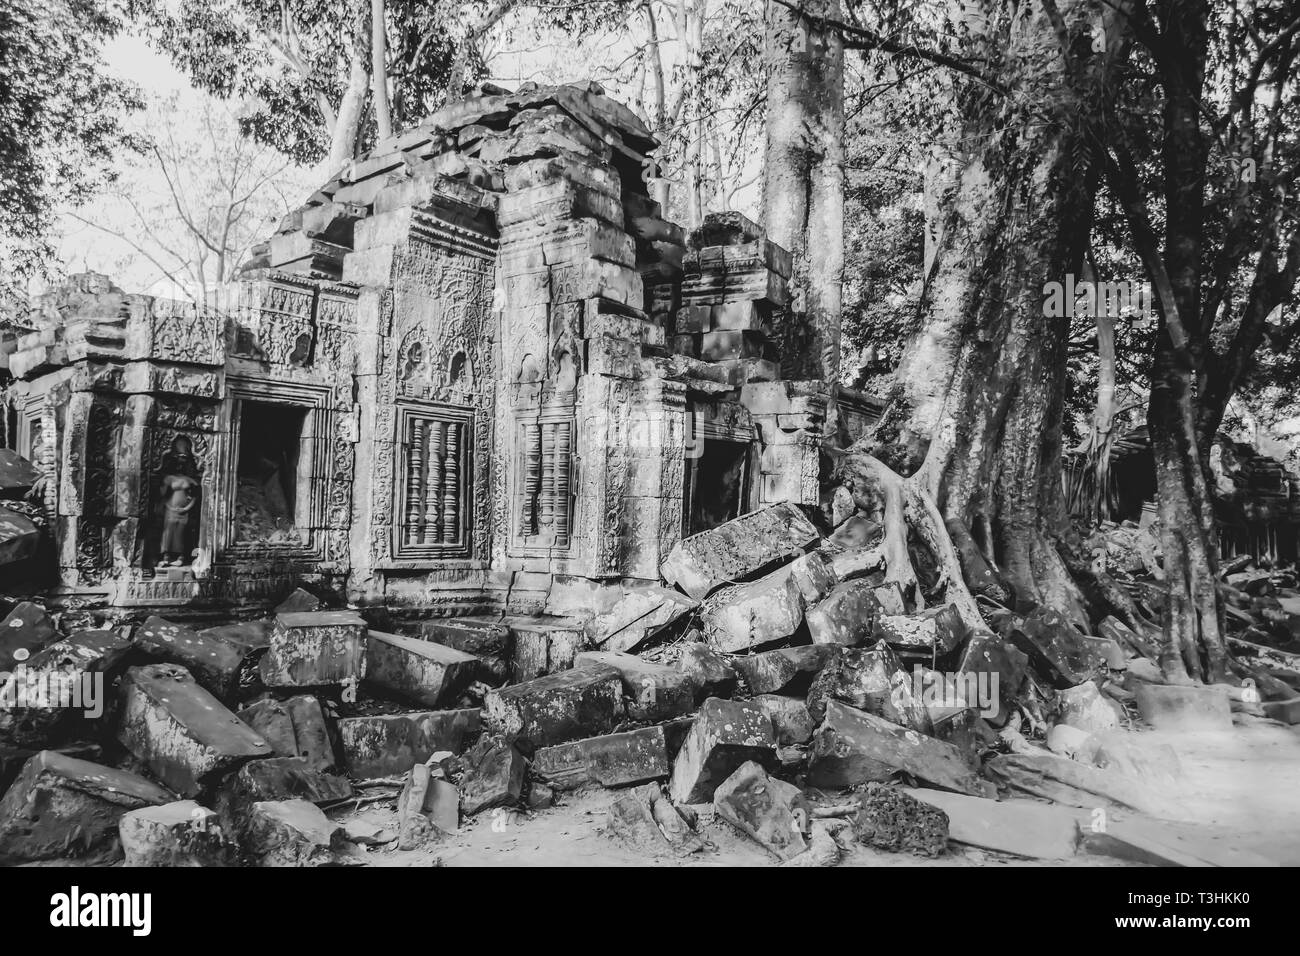 Steinerne Ruinen von Ta Prohm, oder den Dschungel, Tempel, mit Bäume wachsen in Schutt in Siem Reap, Kambodscha in B&W. Stockfoto